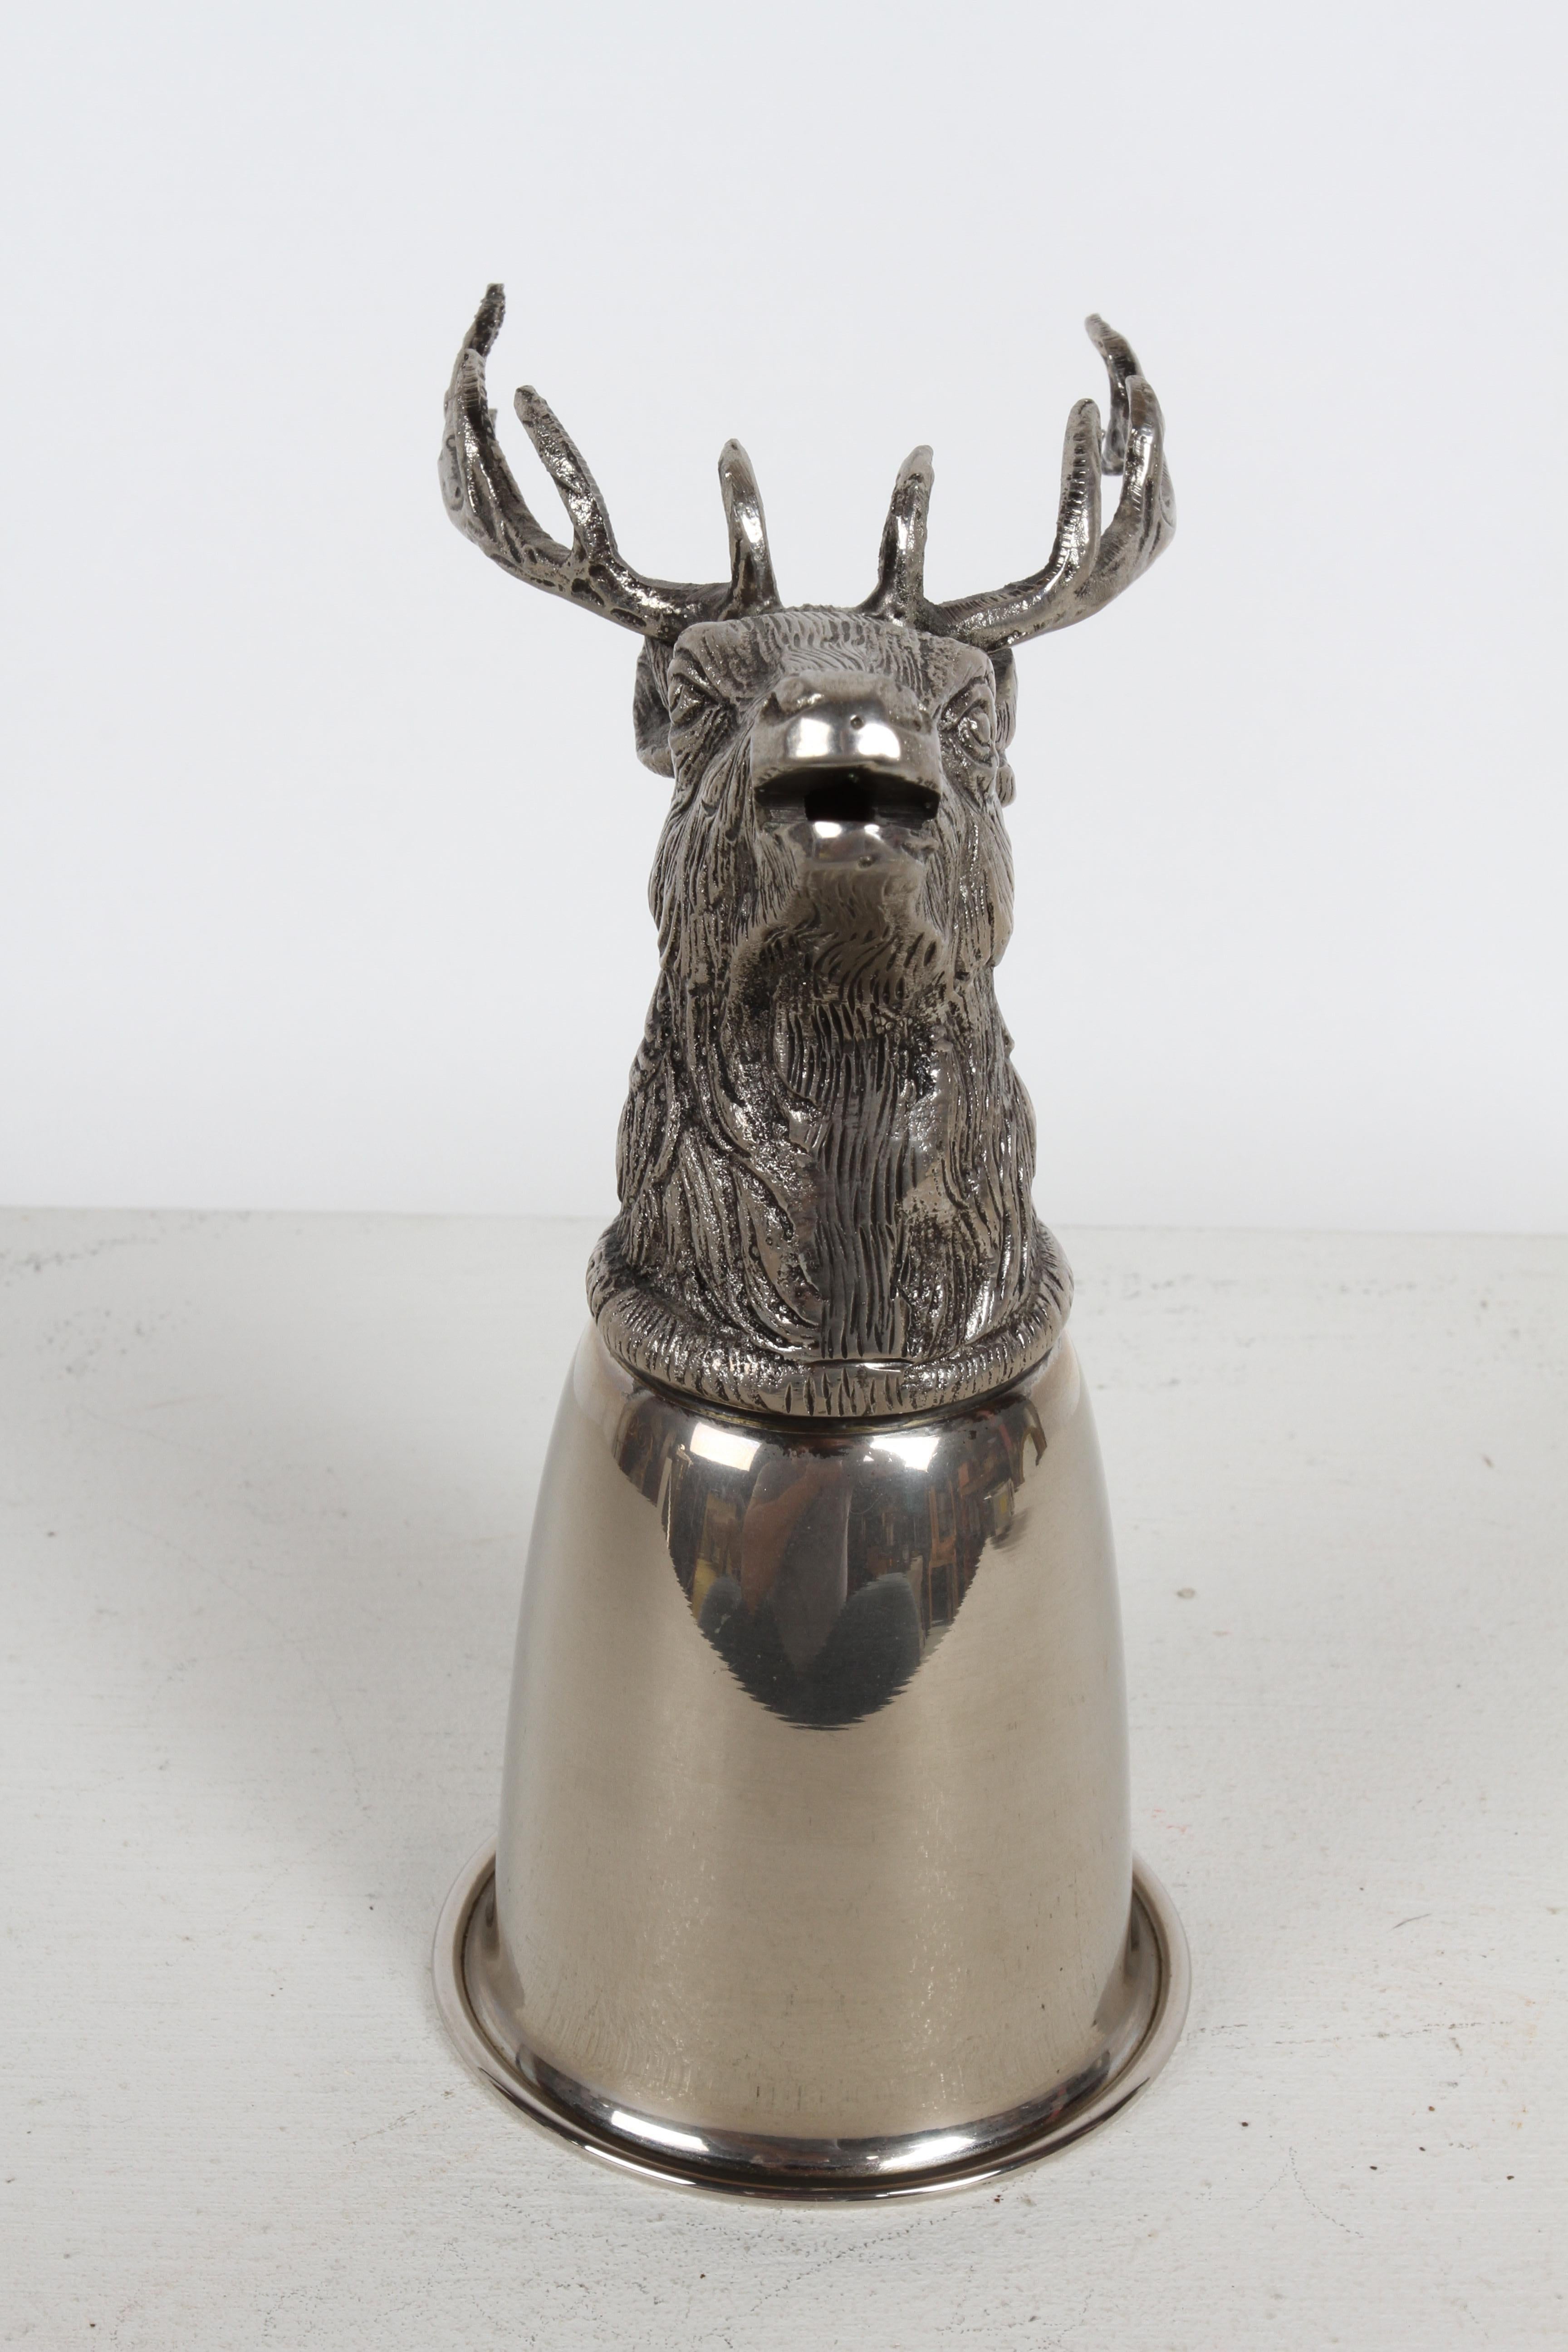 Circa 1970 Gucci - Italy Silver-Plated Elk Head hunting equestrian theme stirrup cup (étrier de chasse en métal argenté). 
Ce gobelet à boire / récipient peut reposer sur la tête ou être exposé retourné avec la tête clairement visible, comme trophée